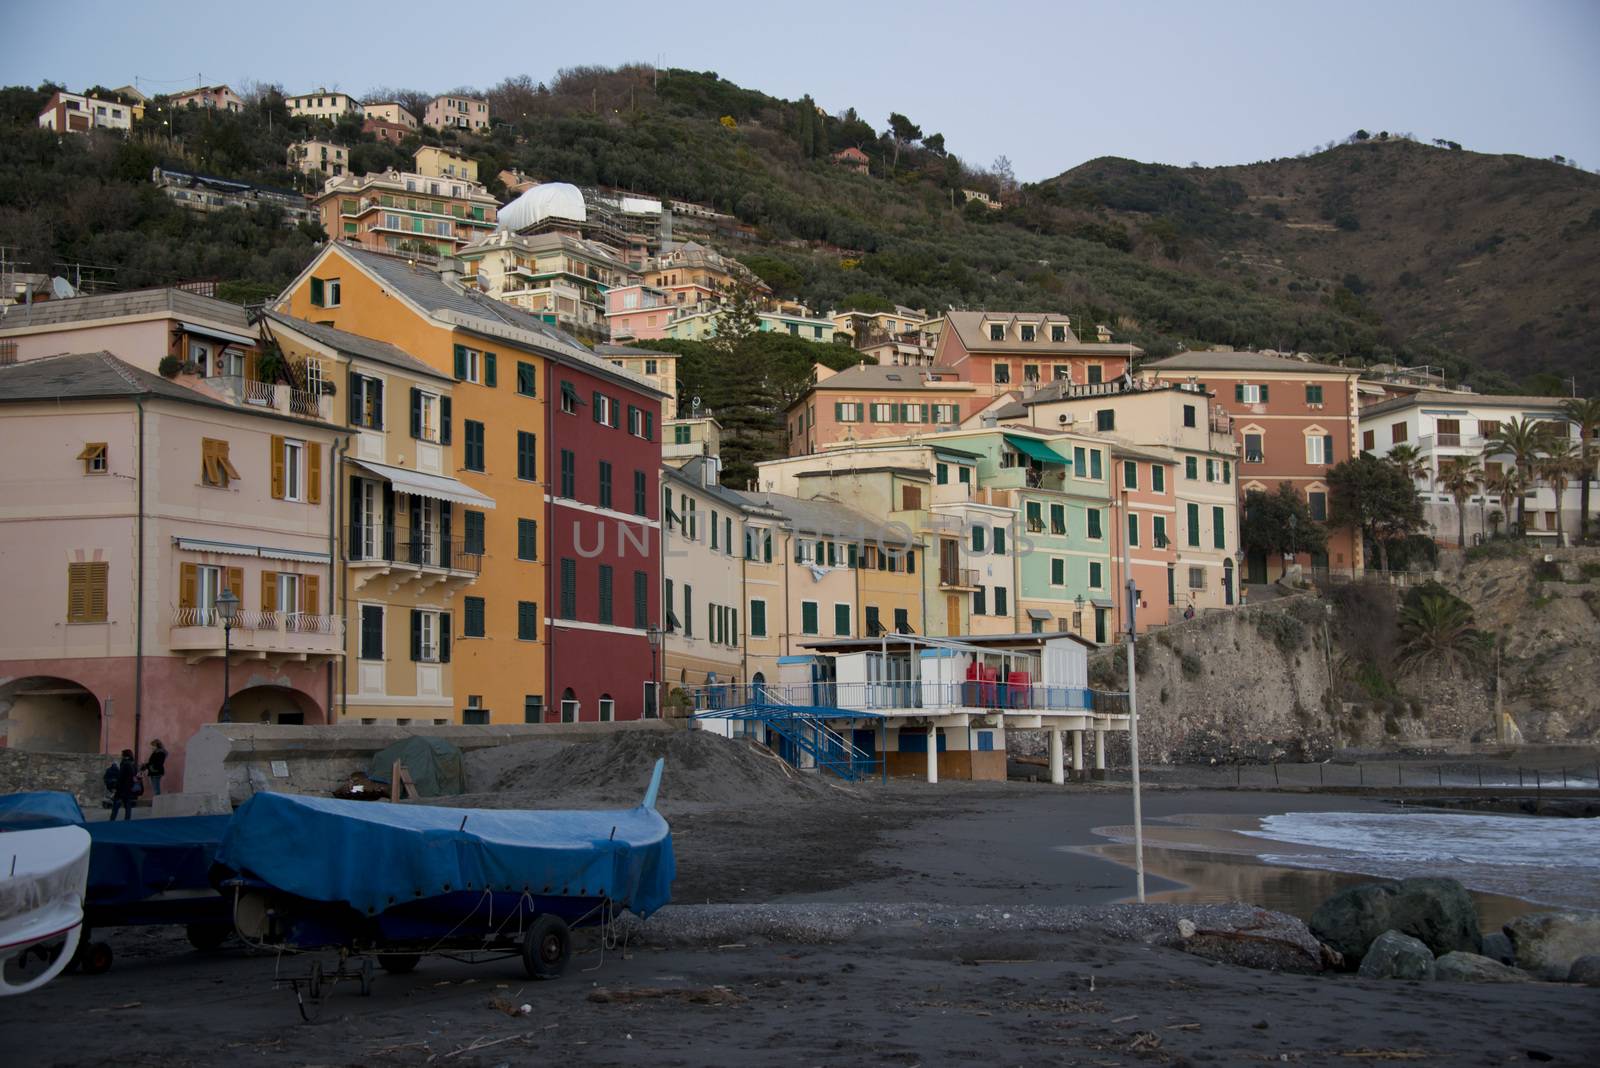 Overview of Bogliasco in Liguria by faabi